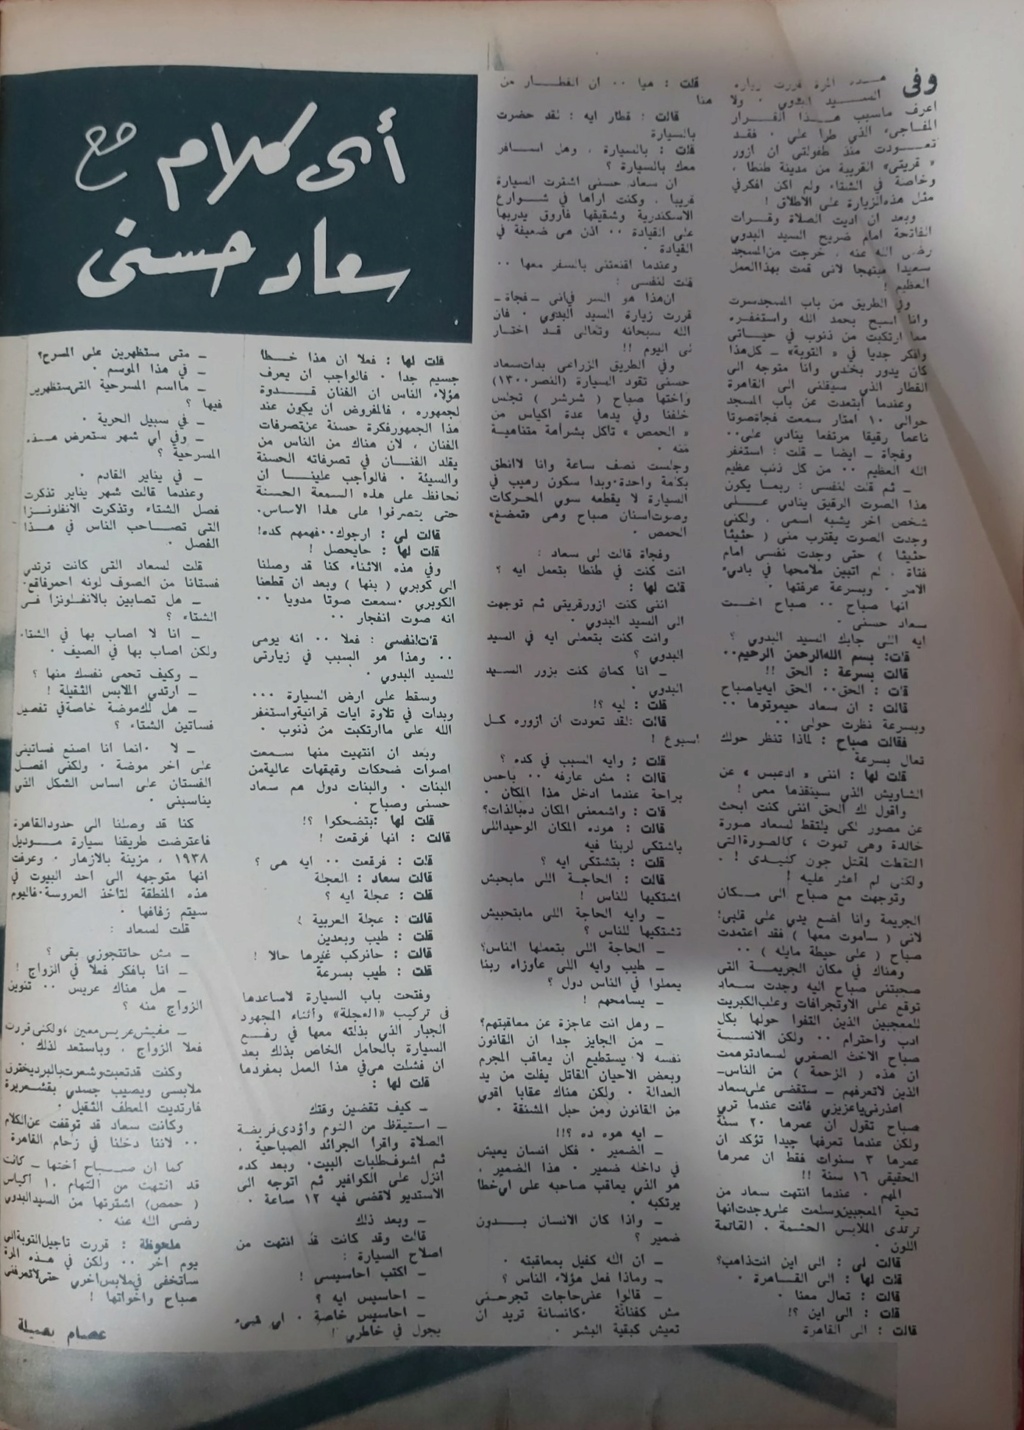 حسني - حوار صحفي : أي كلام مع .. سعاد حسني 1963 م 171